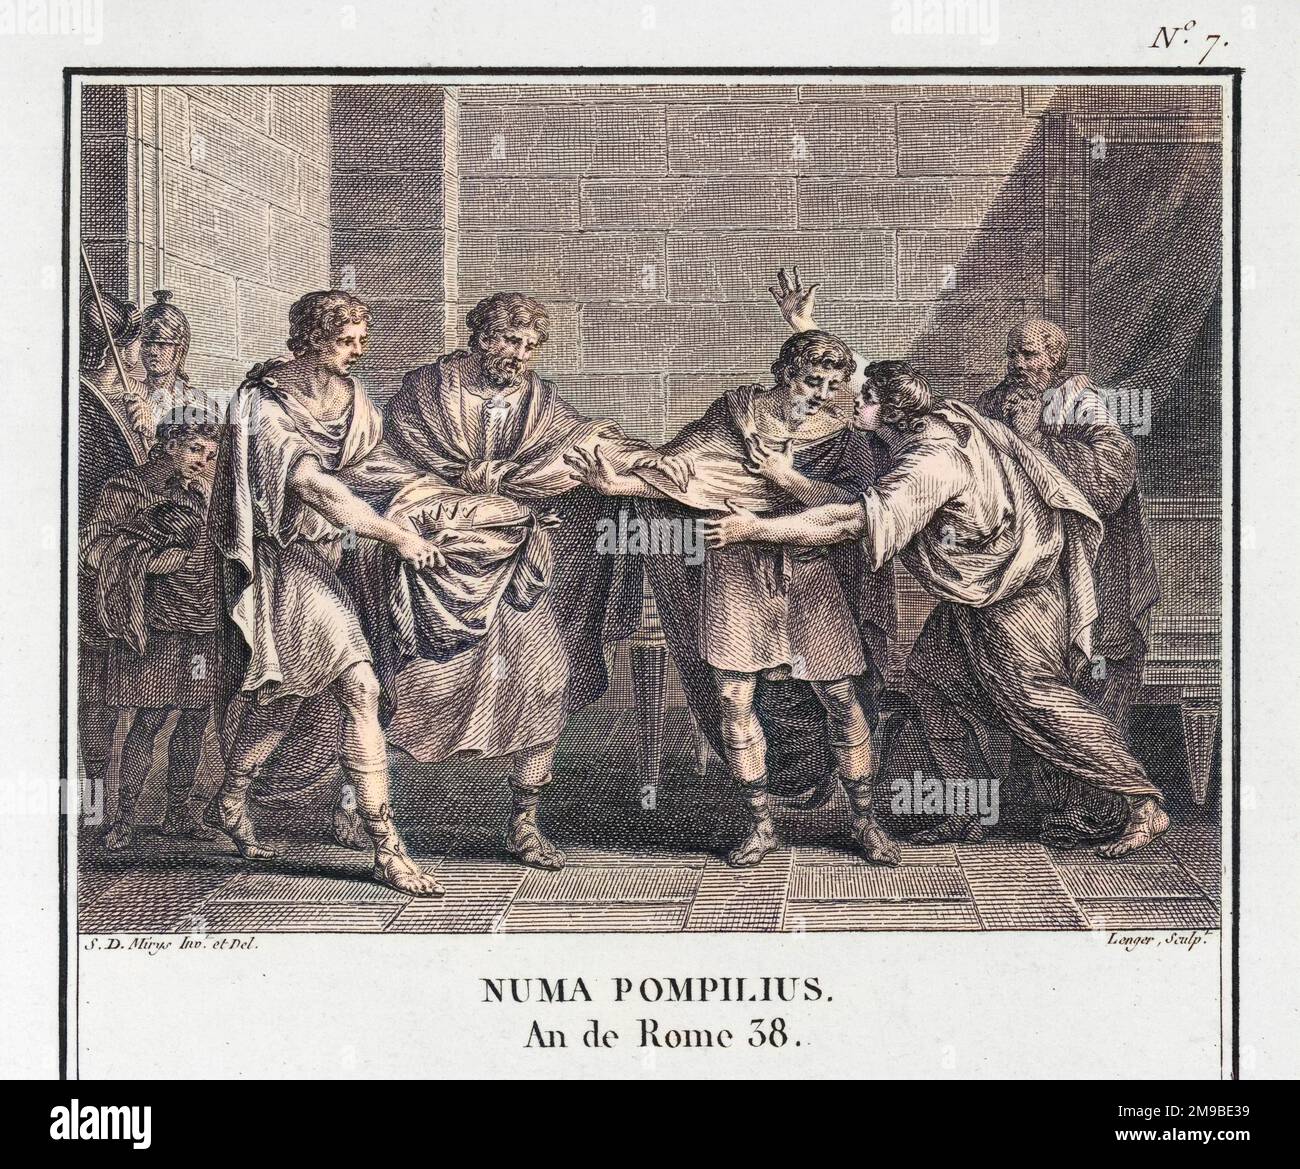 NUMA Pompilius succède à Romulus en tant que dirigeant de Rome, et inaugure le légendaire âge d'or de la Rome antique. Banque D'Images